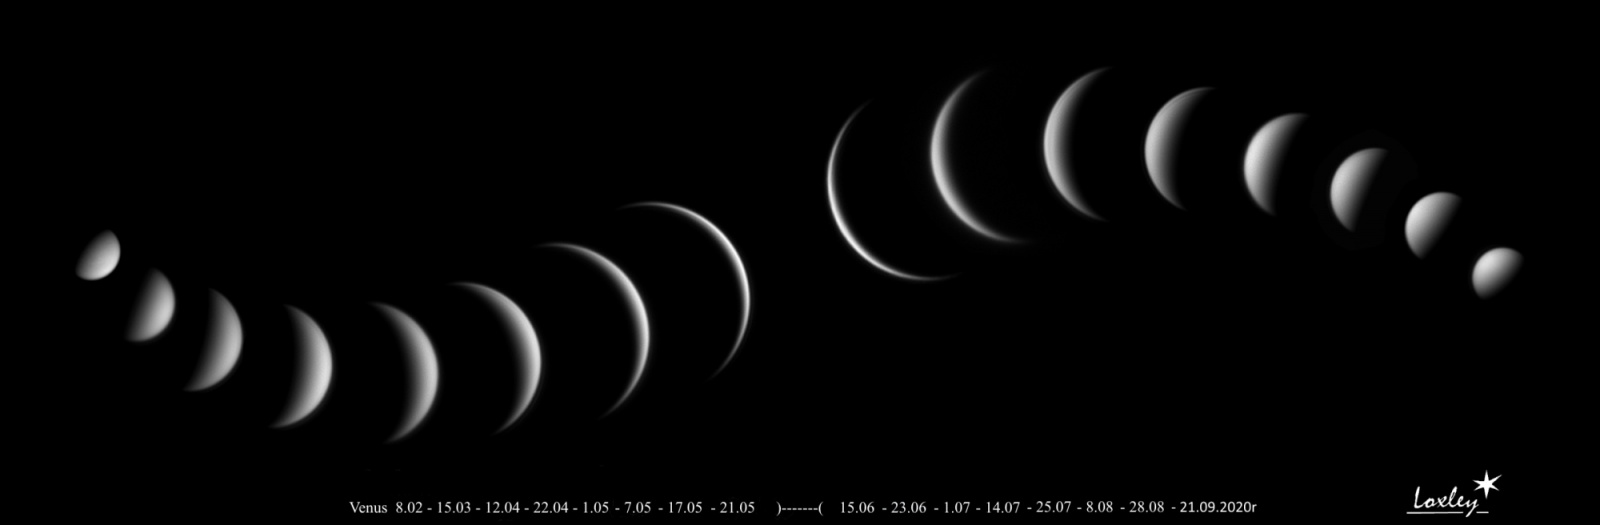 xFazy Wenus, czyli zmienne oblicze Gwiazdy Wieczornej i Jutrzenki  8.02_21.05.2020r i po koniunkcji 15.06_21.09__Drizzle 120%....jpg